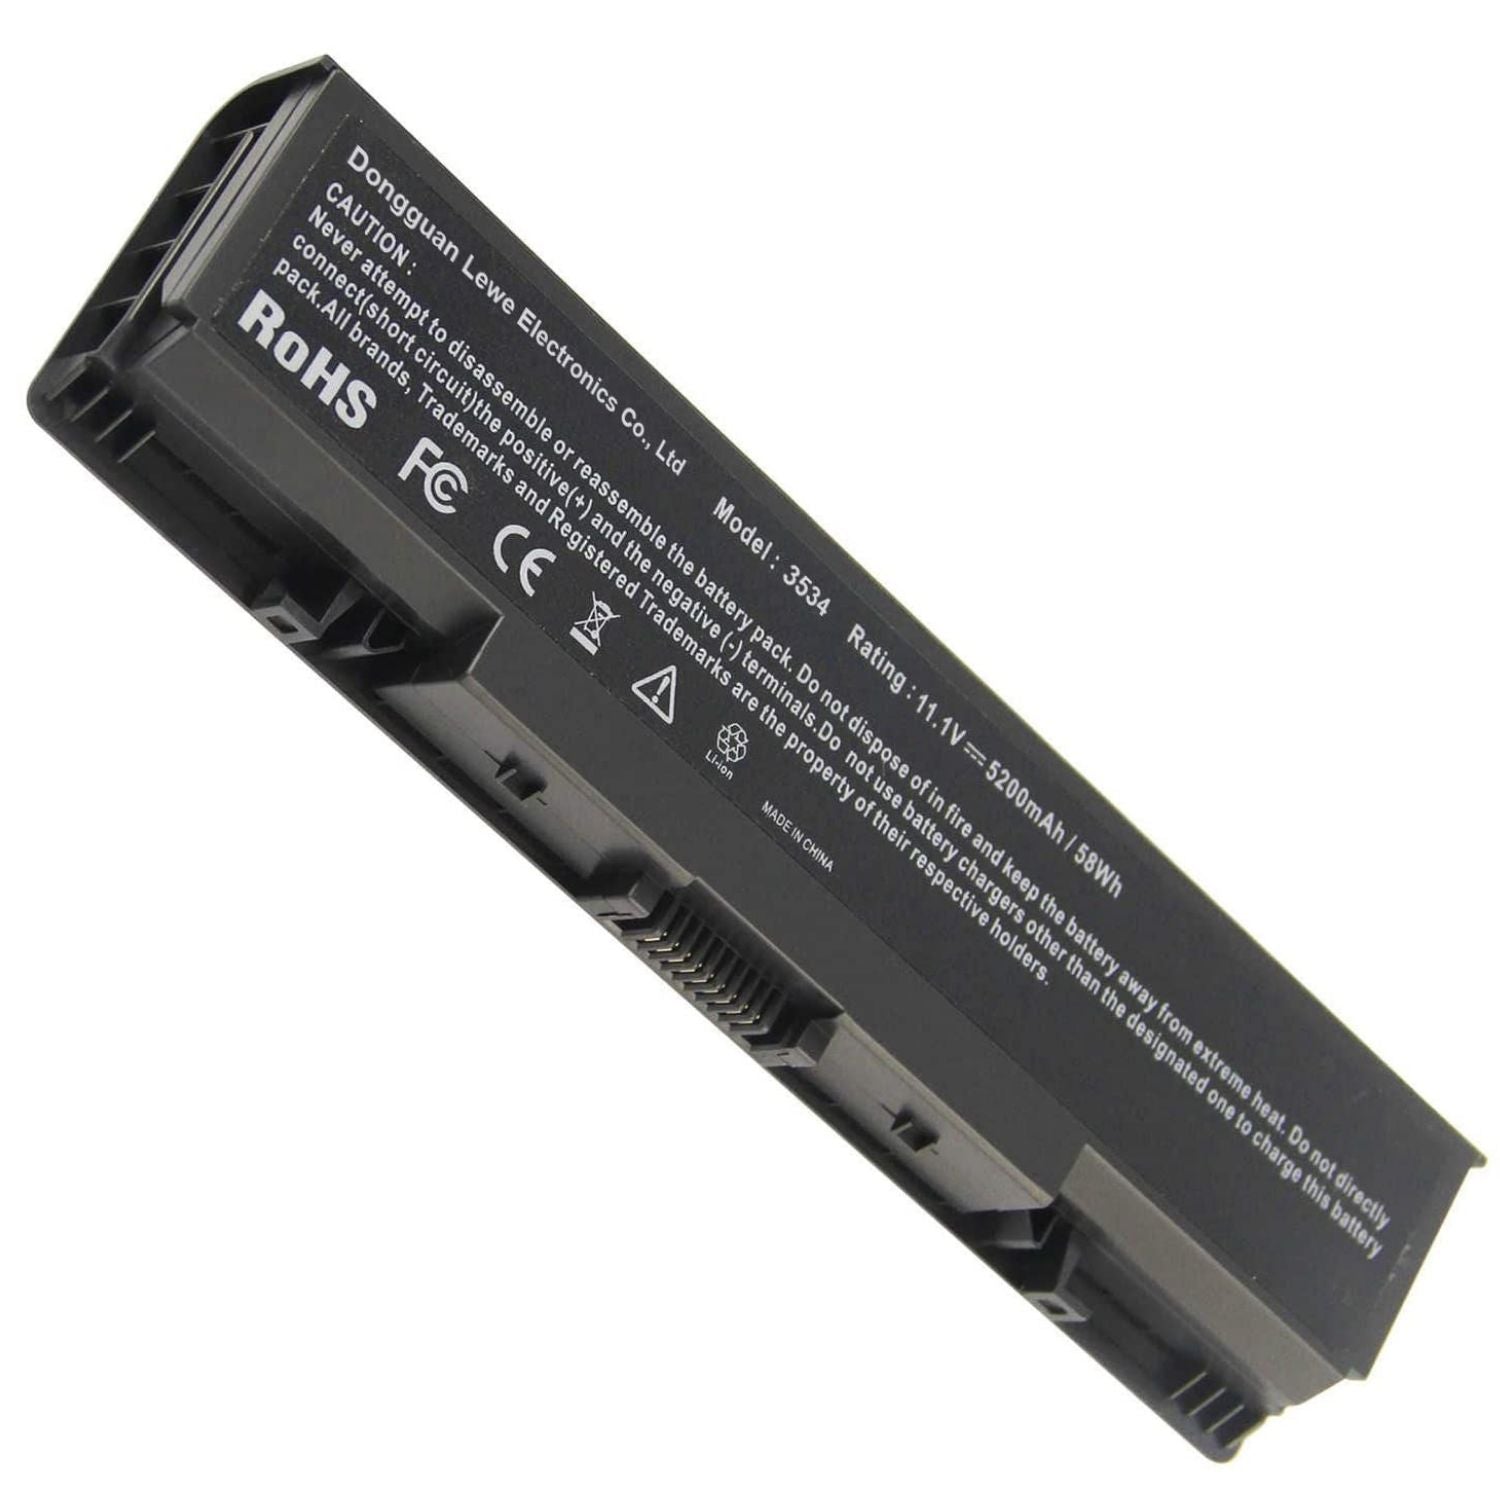 Dell 1520 Battery for 1521 1721 pp22l pp22x Vostro 1500 1700, fits P/N FK890 FP282 GK476 GK479 Laptop Serie's